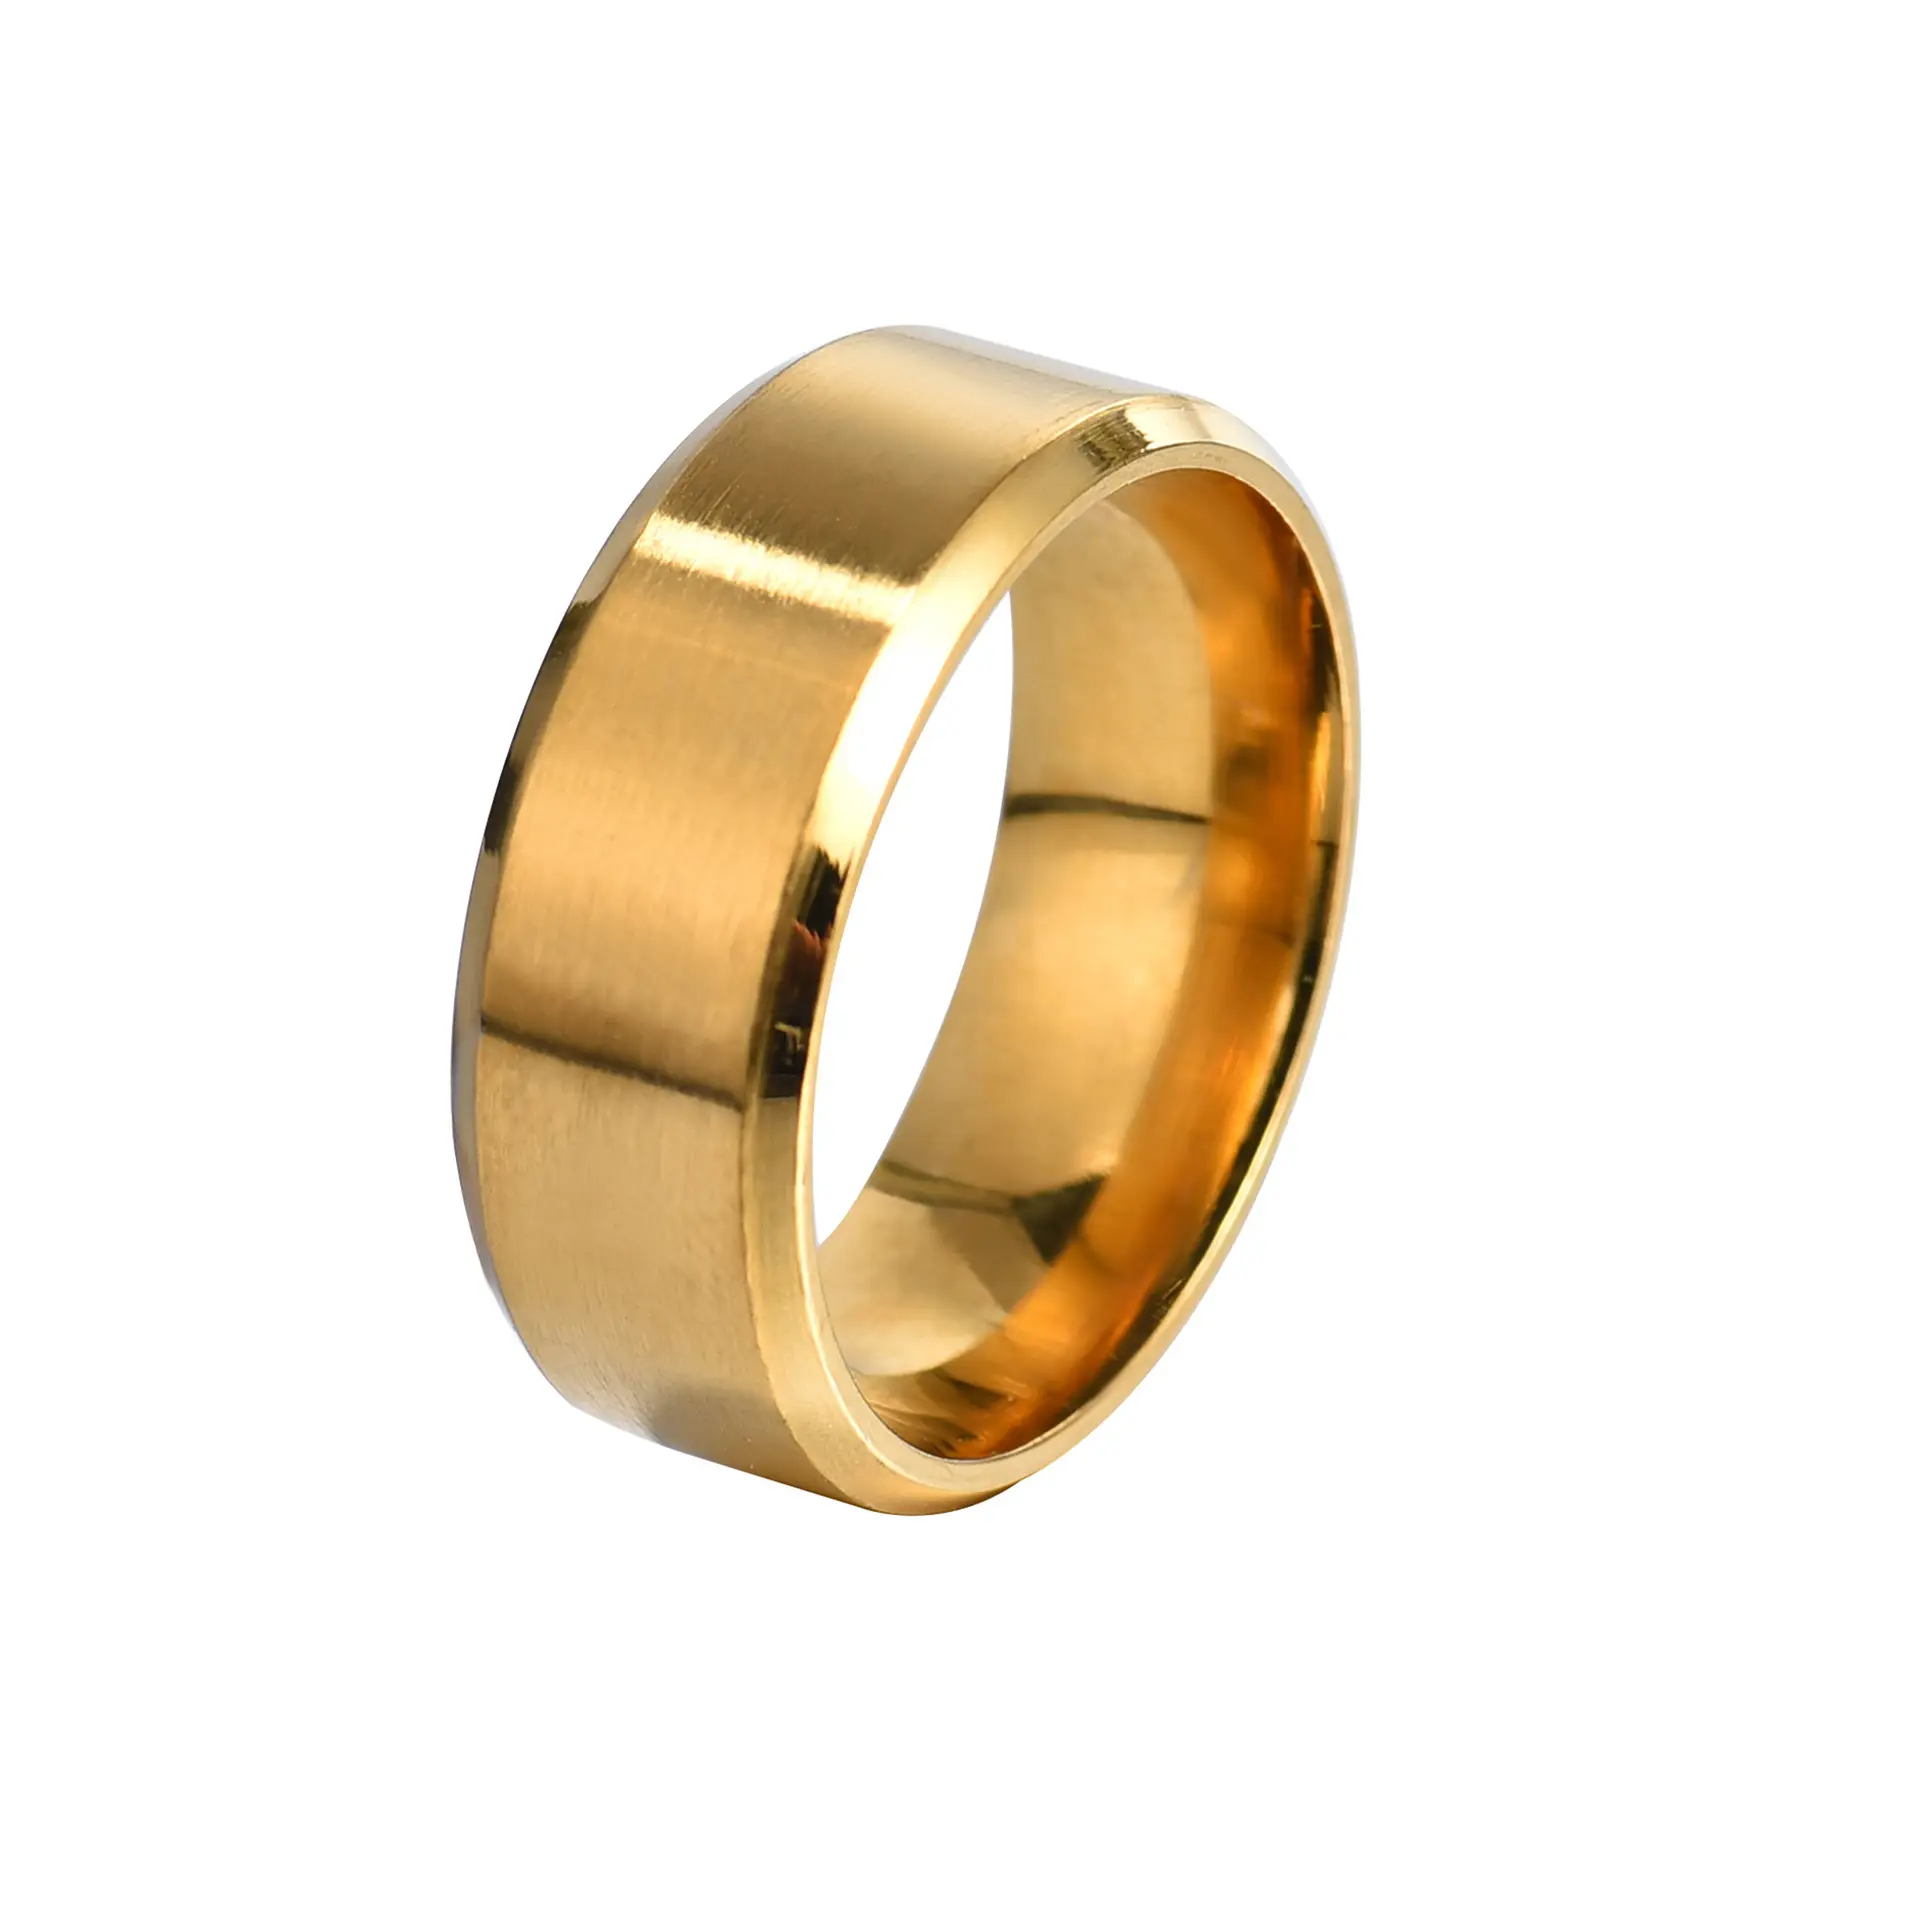 Mode Trendy 6 Kleuren 316l Roestvrij Staal Ring 8Mm Breedte Blanks Populaire Goedkope Sieraden Ring Full Size Voor Mannen